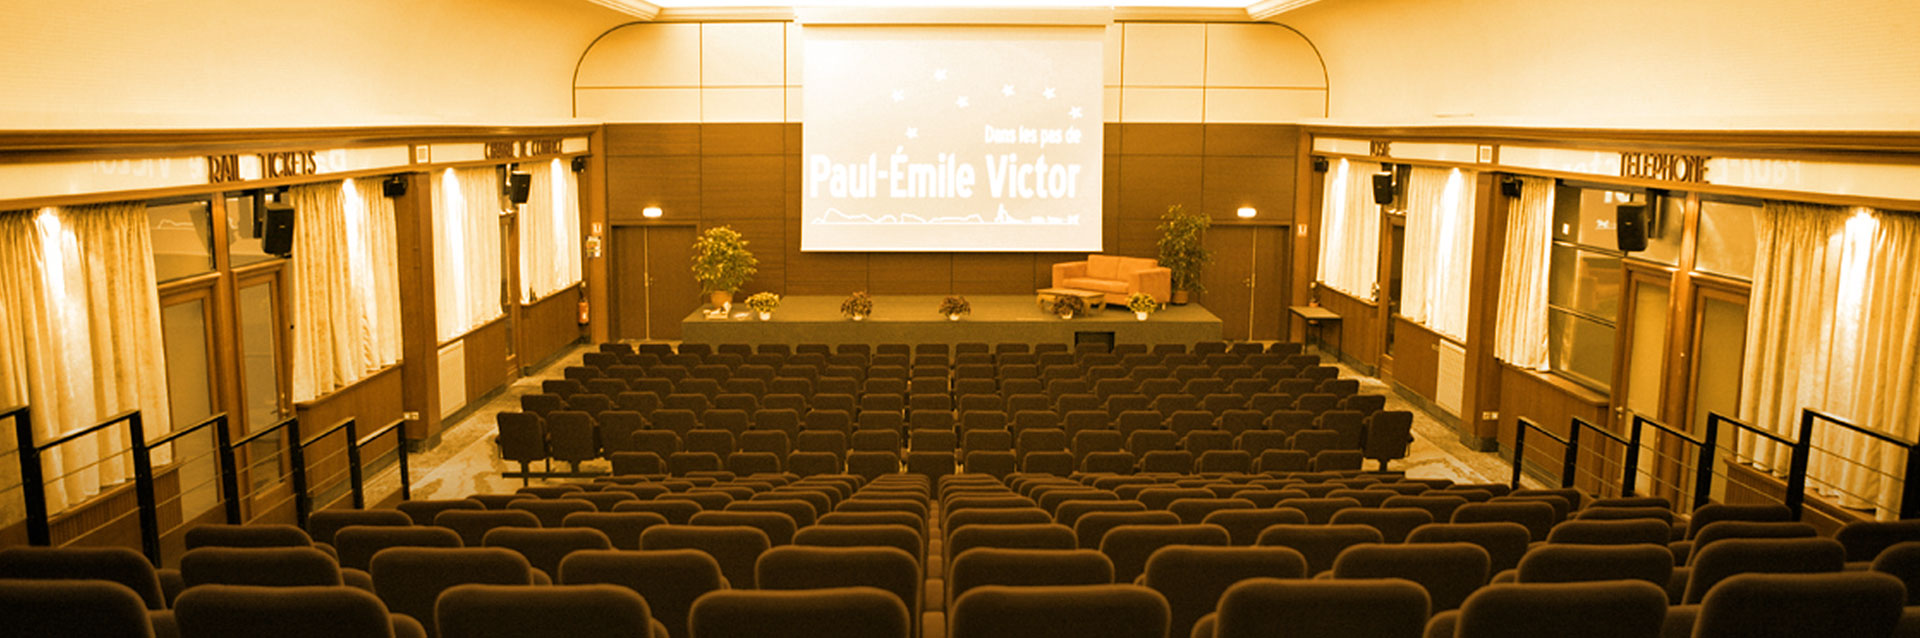 Auditorium-3-Sepia